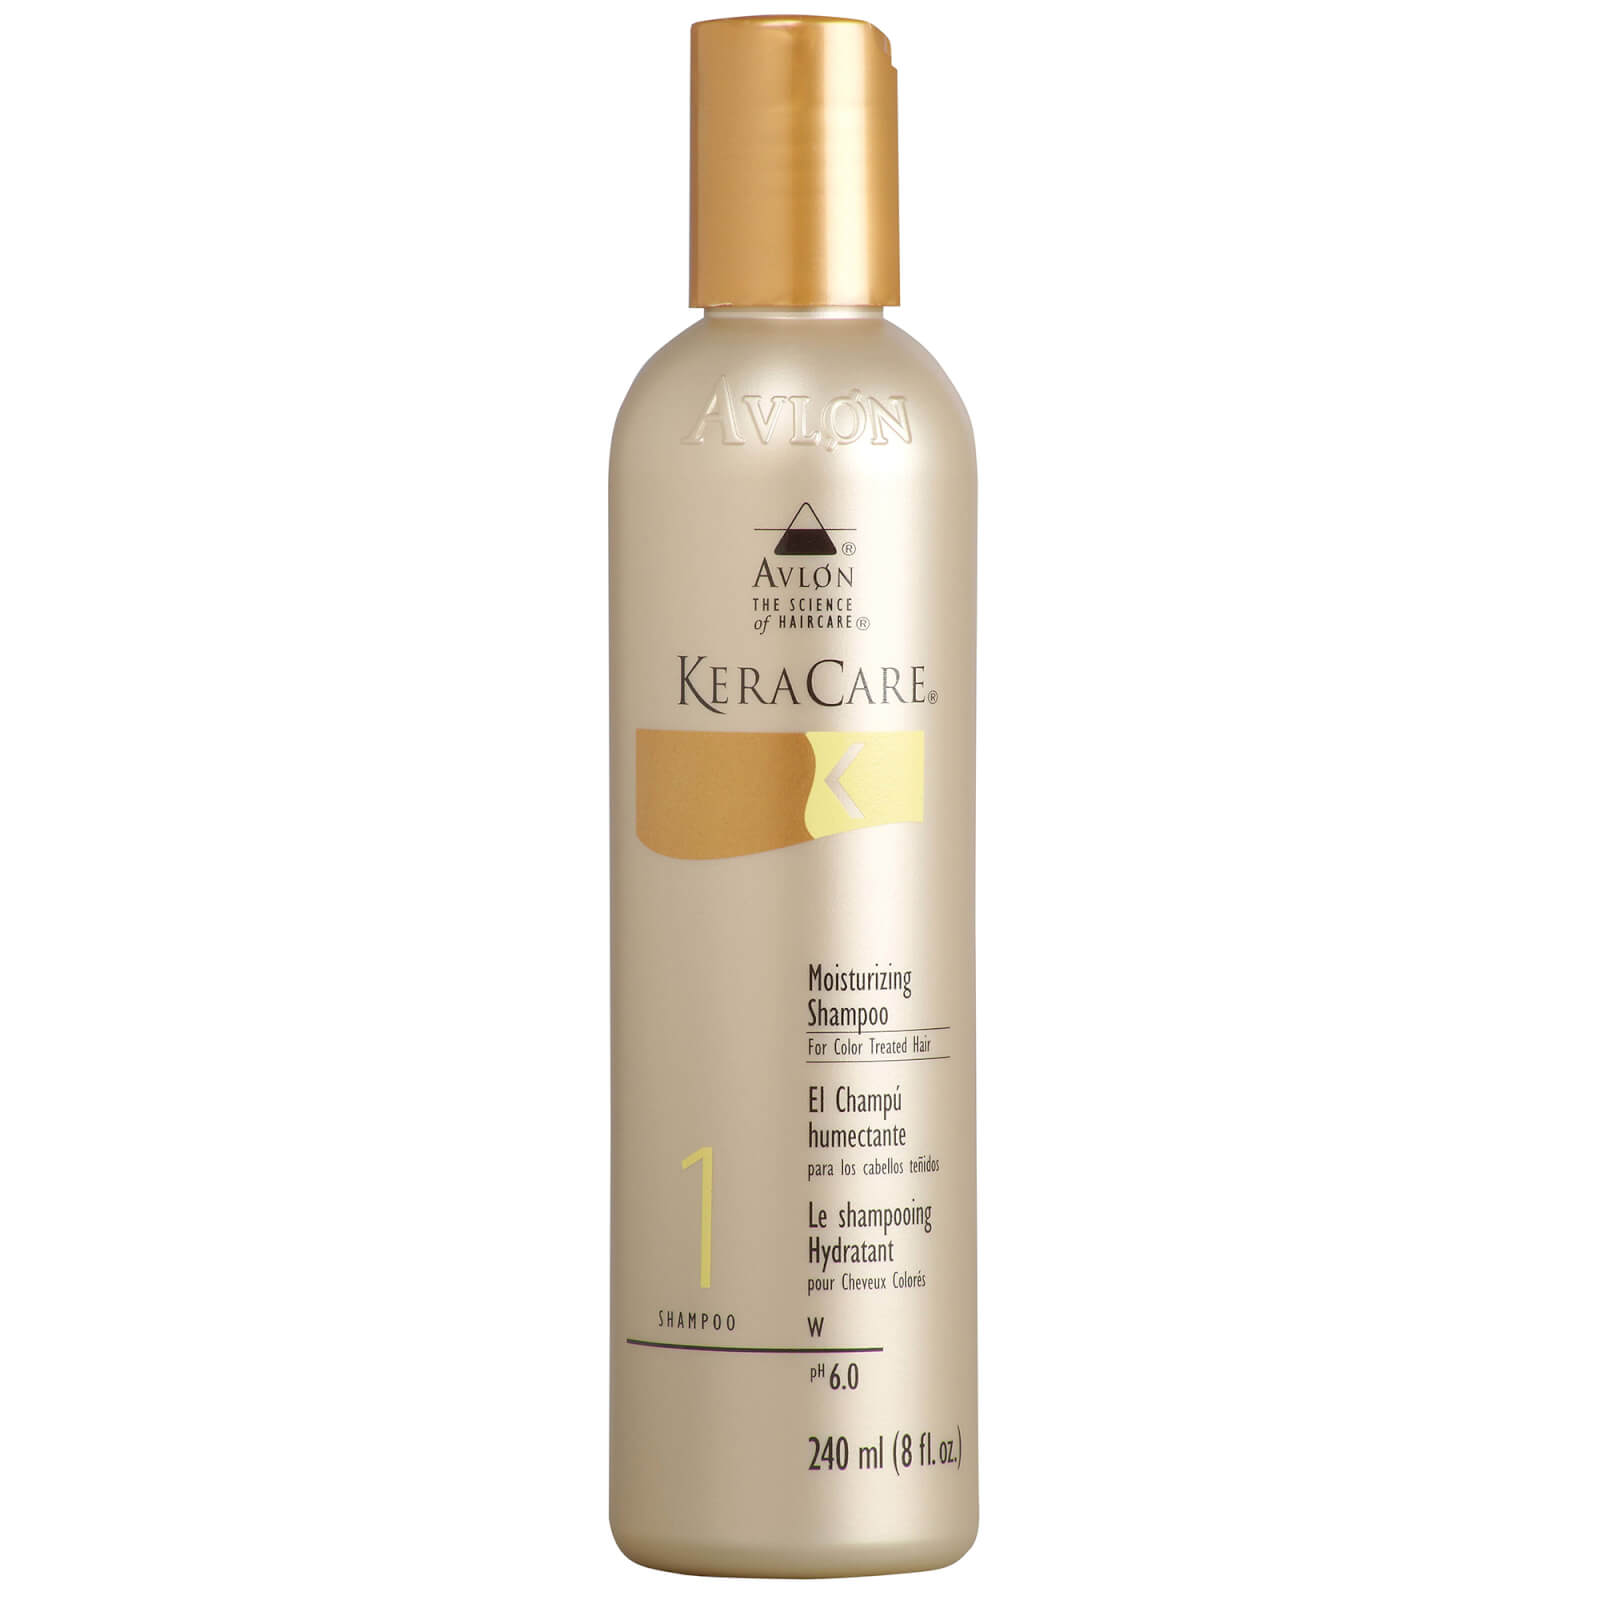 Keracare shampoo per capelli trattati con colore (240 ml)